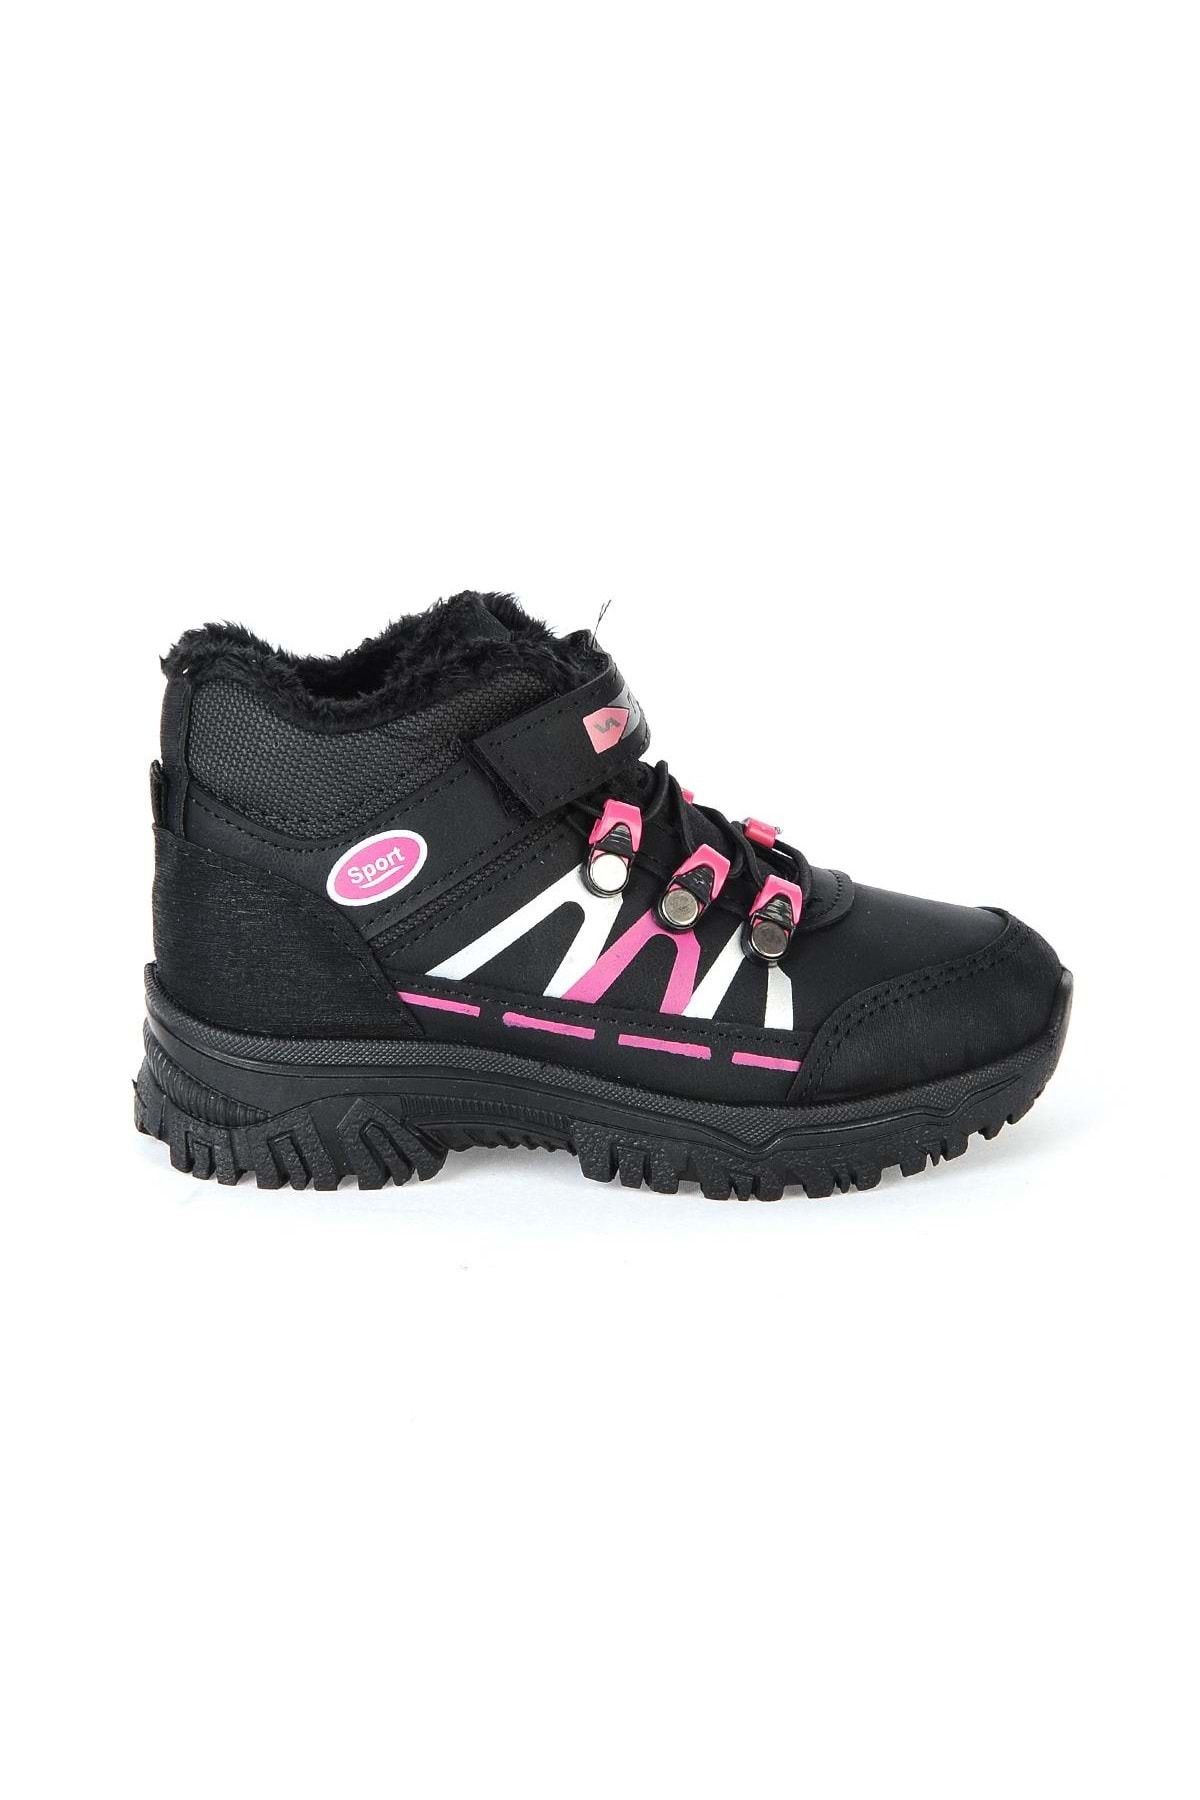 moda ayakkabım Moda Ayakkabı 978 Kız Çocuk Bot Ayakkabı